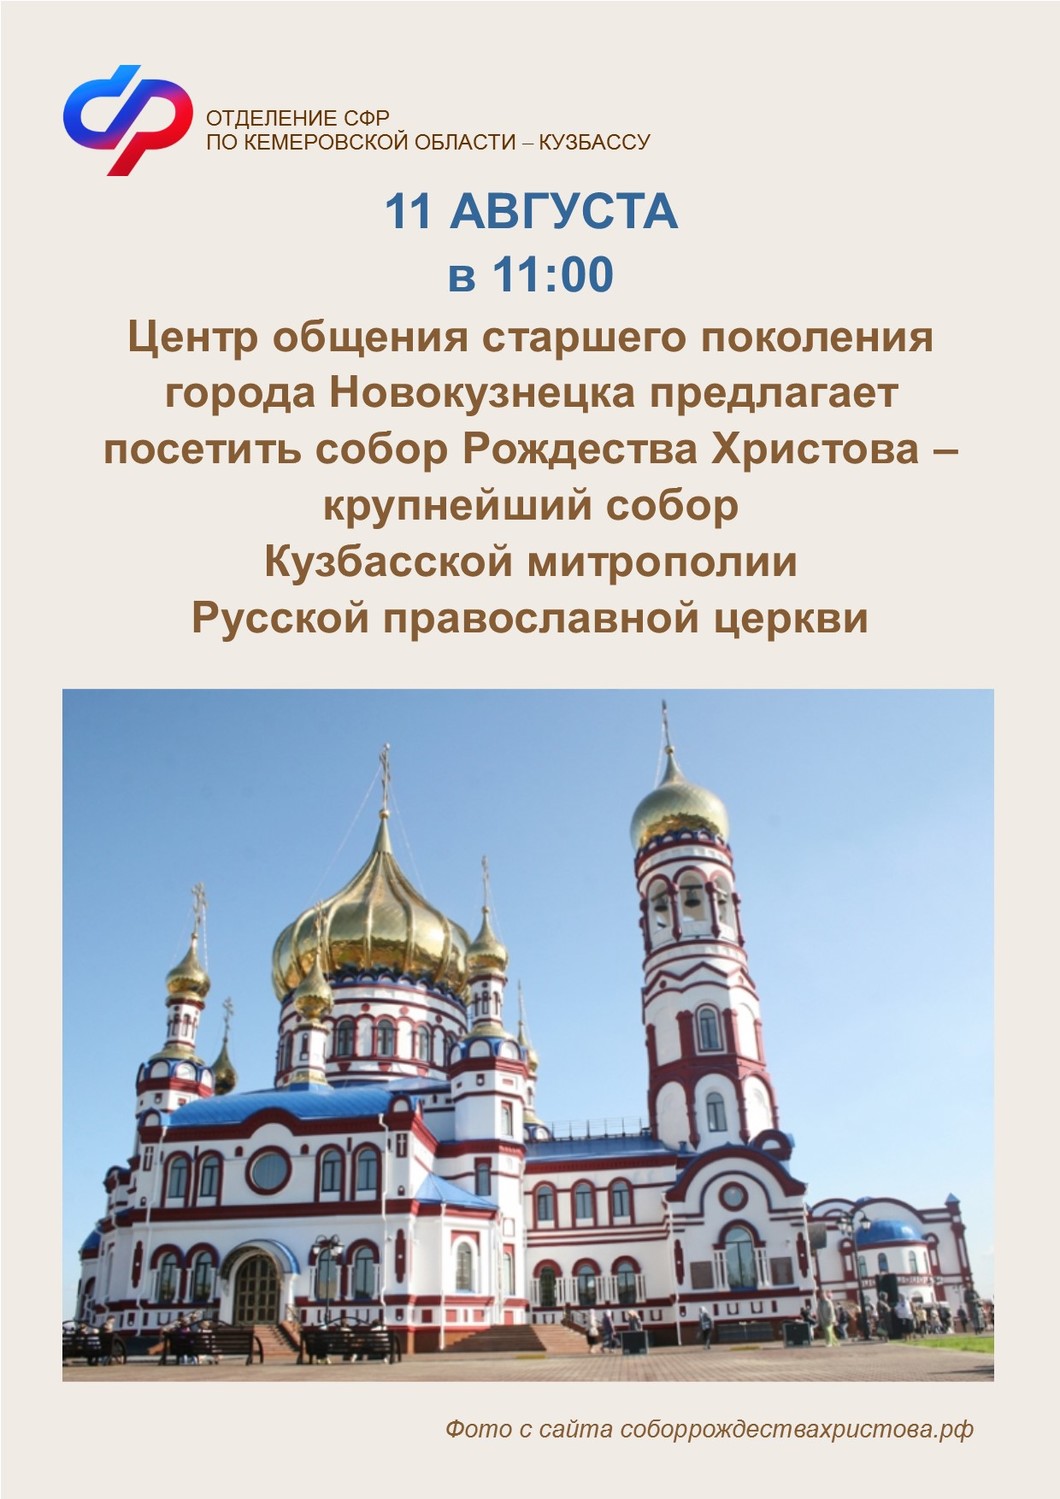 Центр общения старшего поколения города Новокузнецка приглашает пенсионеров на экскурсию в собор Рождества Христова!